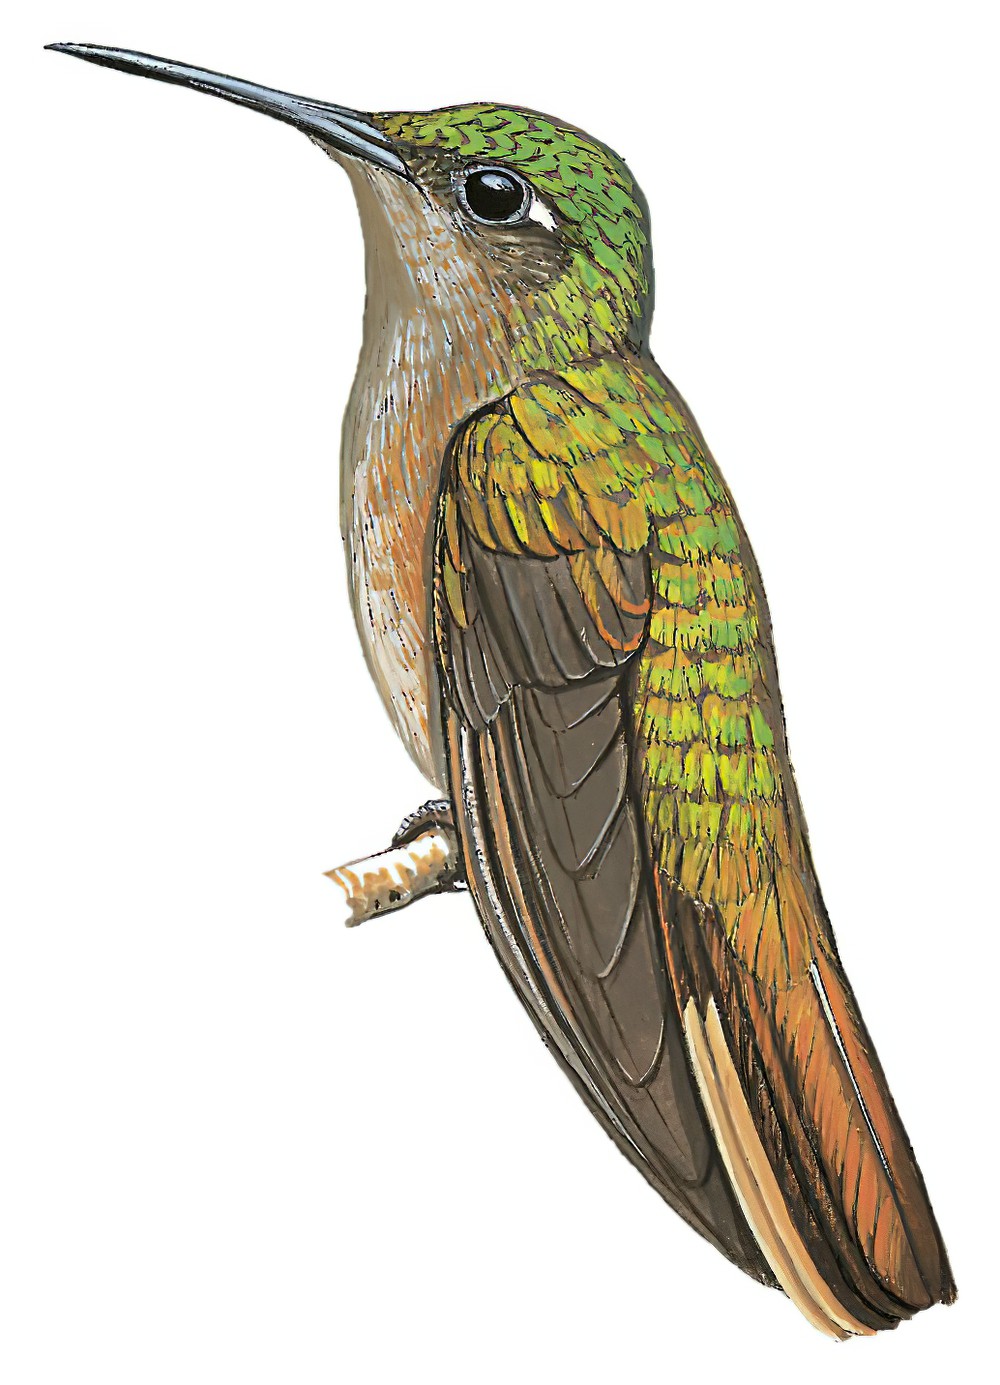 黄胸刀翅蜂鸟 / Buff-breasted Sabrewing / Campylopterus duidae